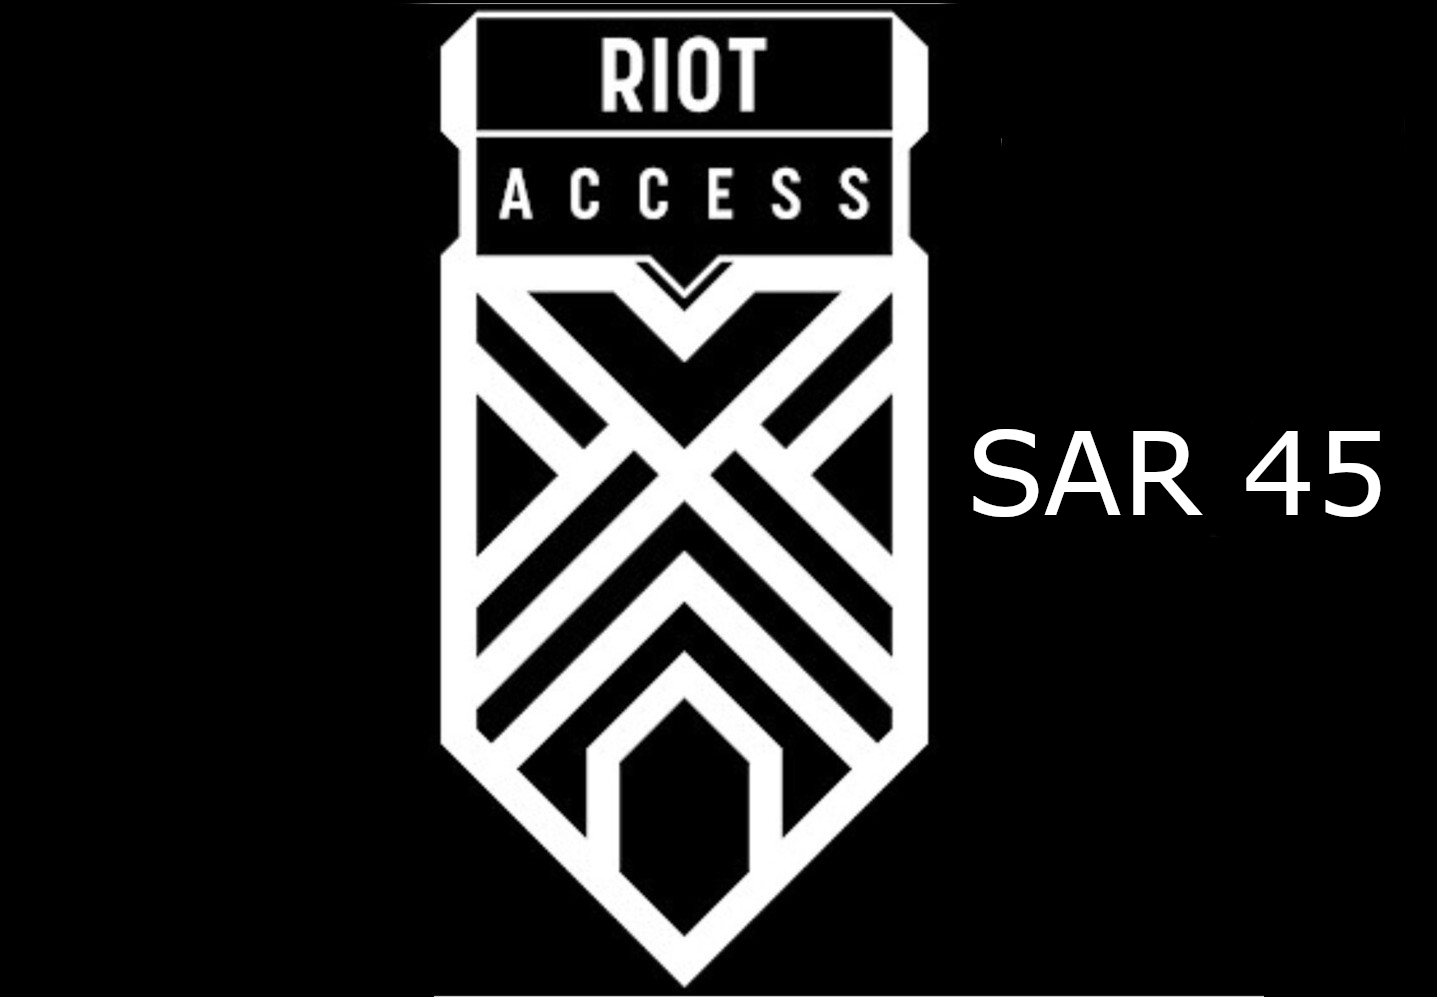 Riot Access 45 SAR Code SA